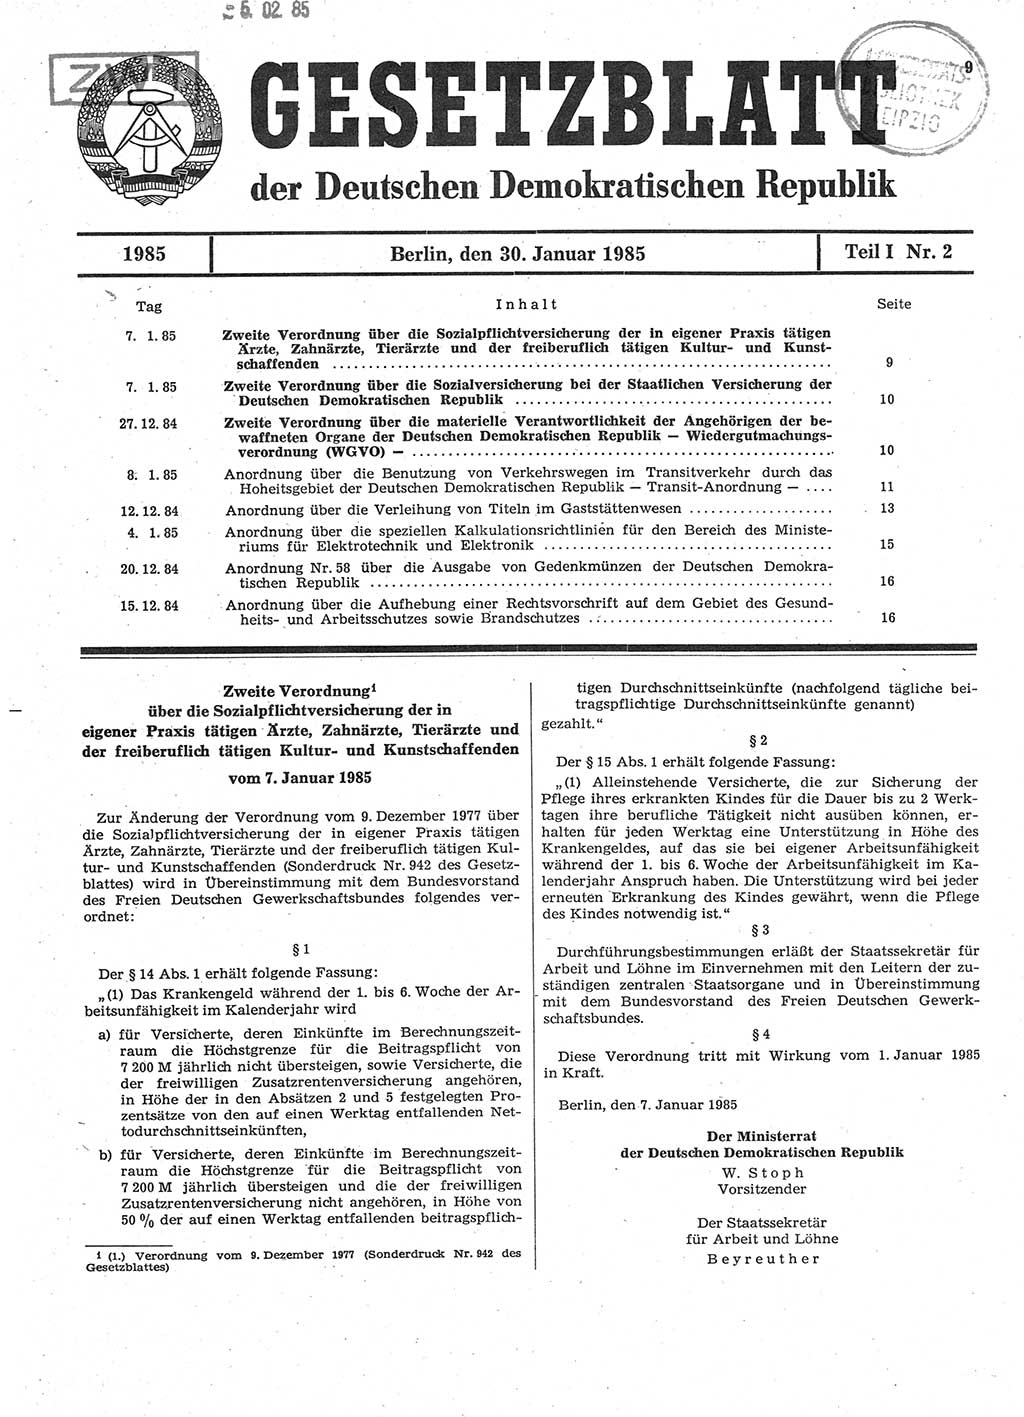 Gesetzblatt (GBl.) der Deutschen Demokratischen Republik (DDR) Teil Ⅰ 1985, Seite 9 (GBl. DDR Ⅰ 1985, S. 9)